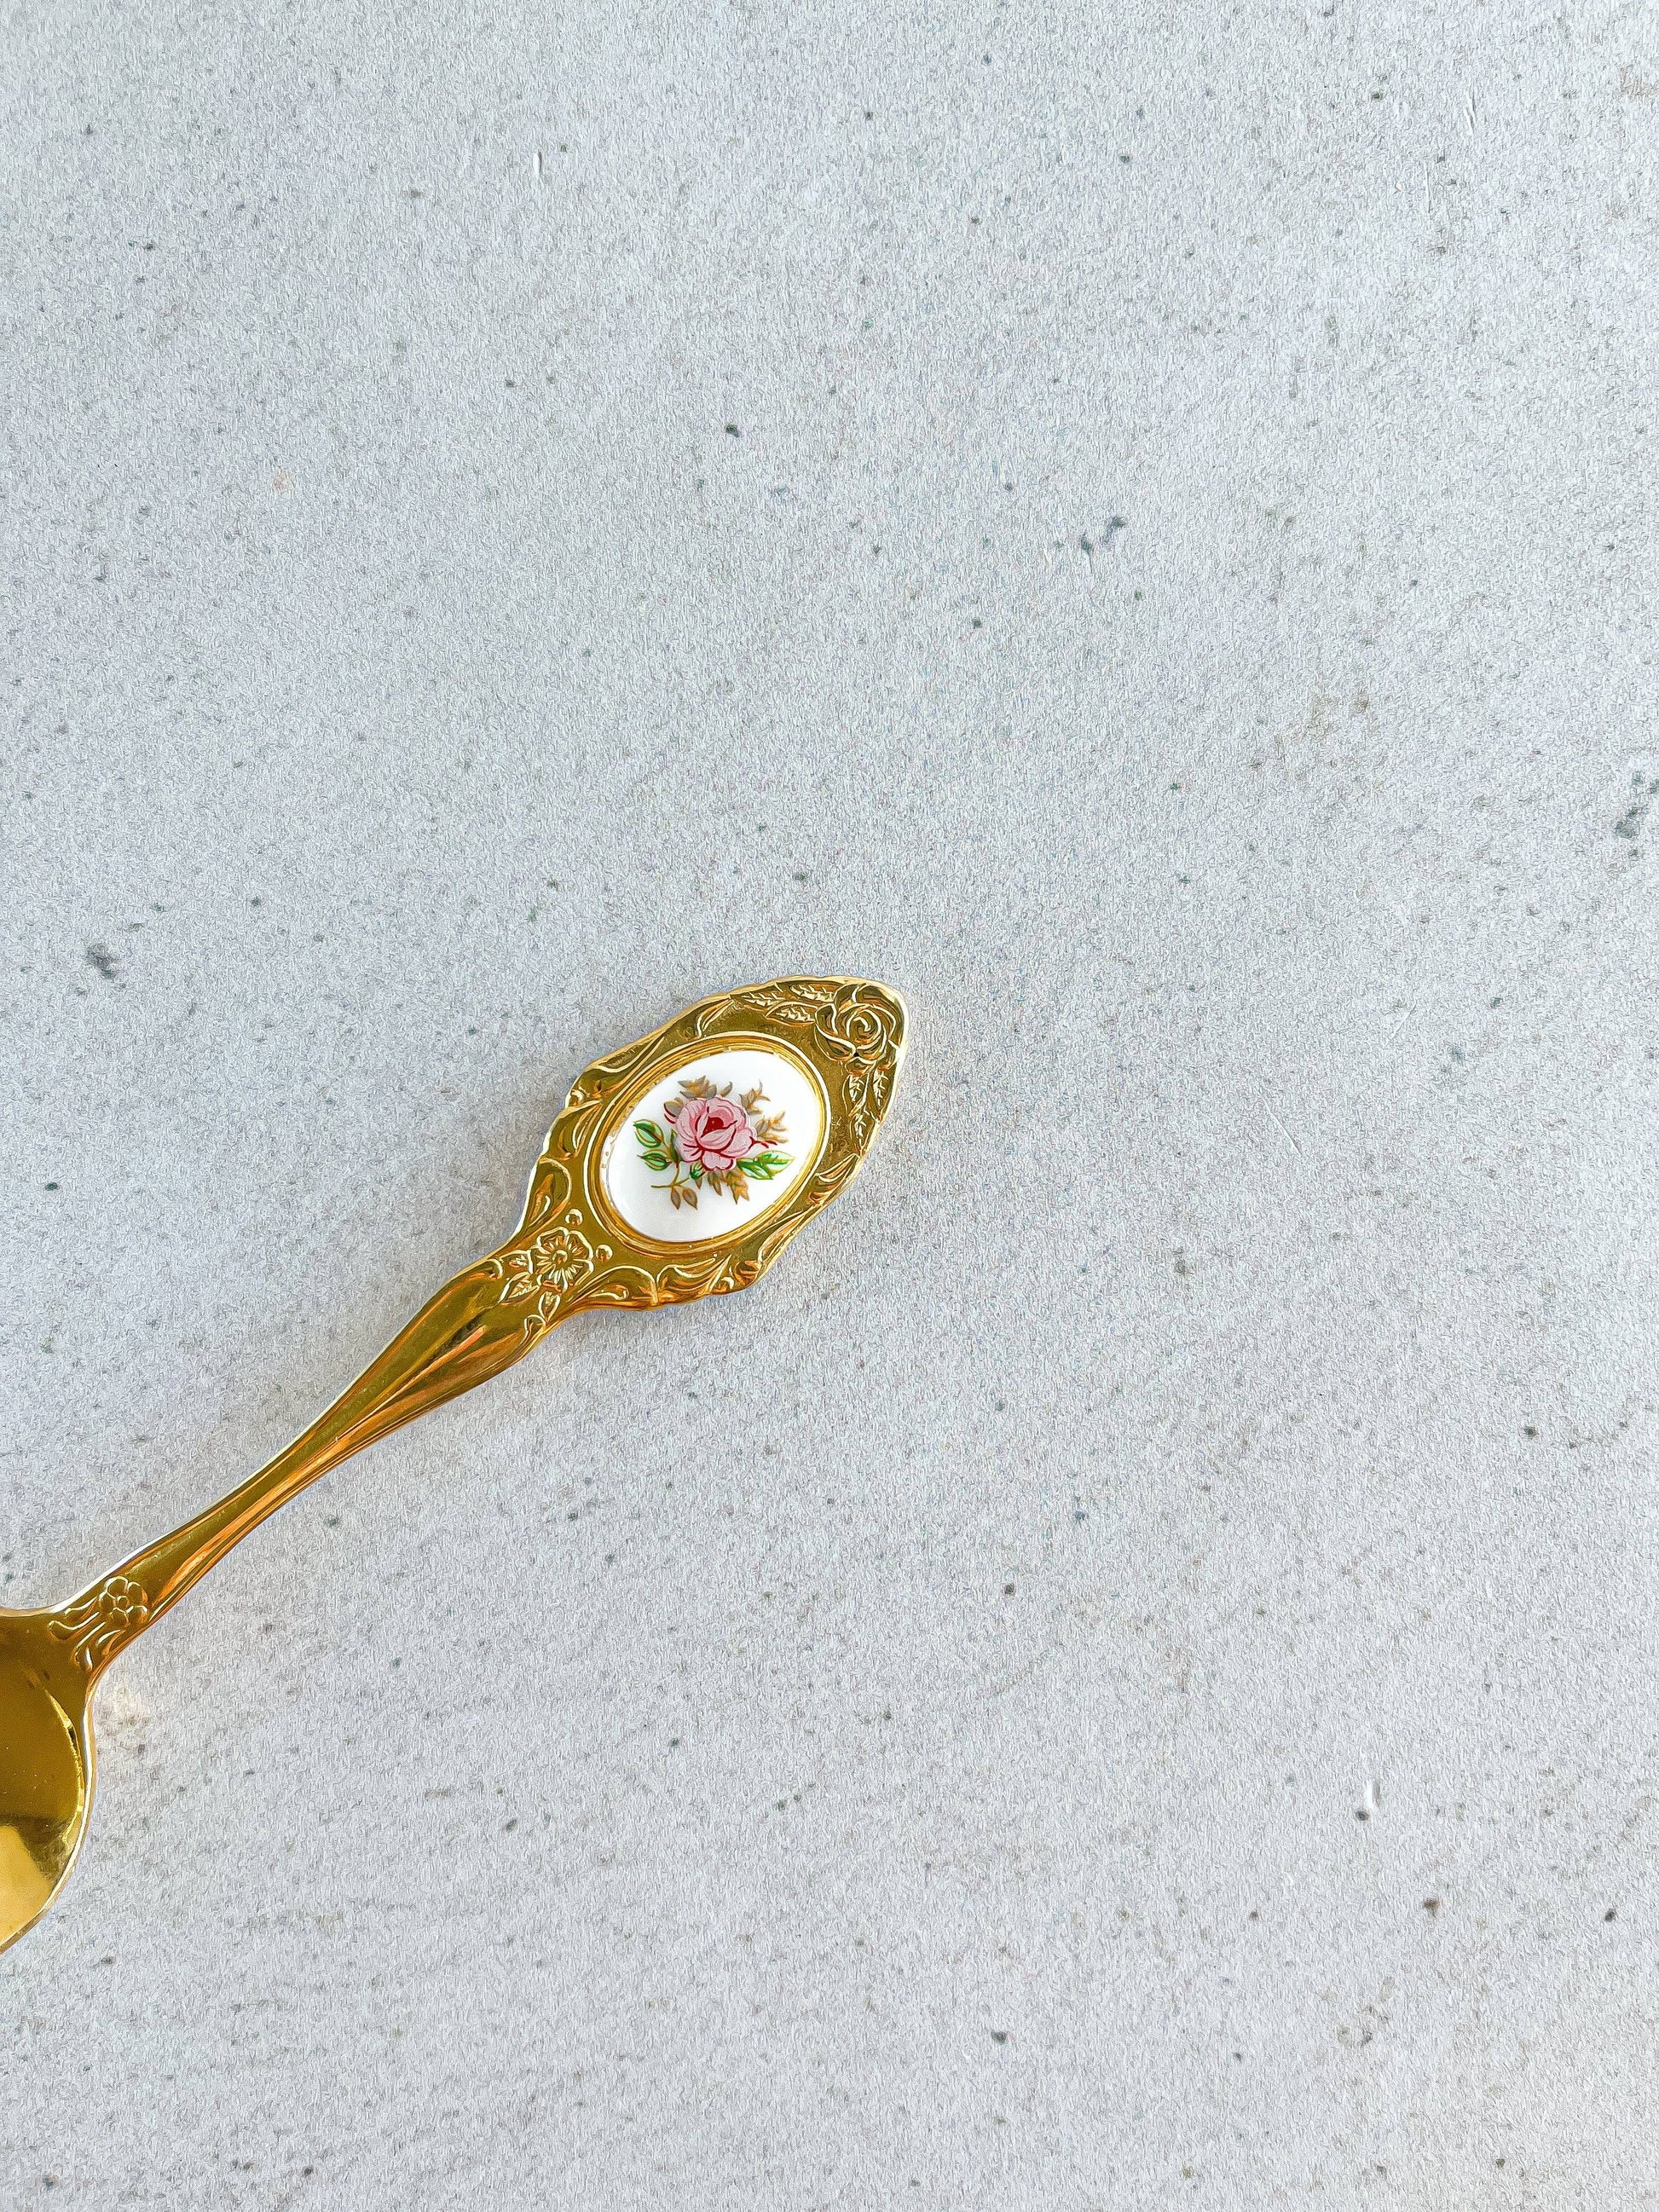 Eetrite Sugar Spoons - Floral Medallion Designs - SOSC Home